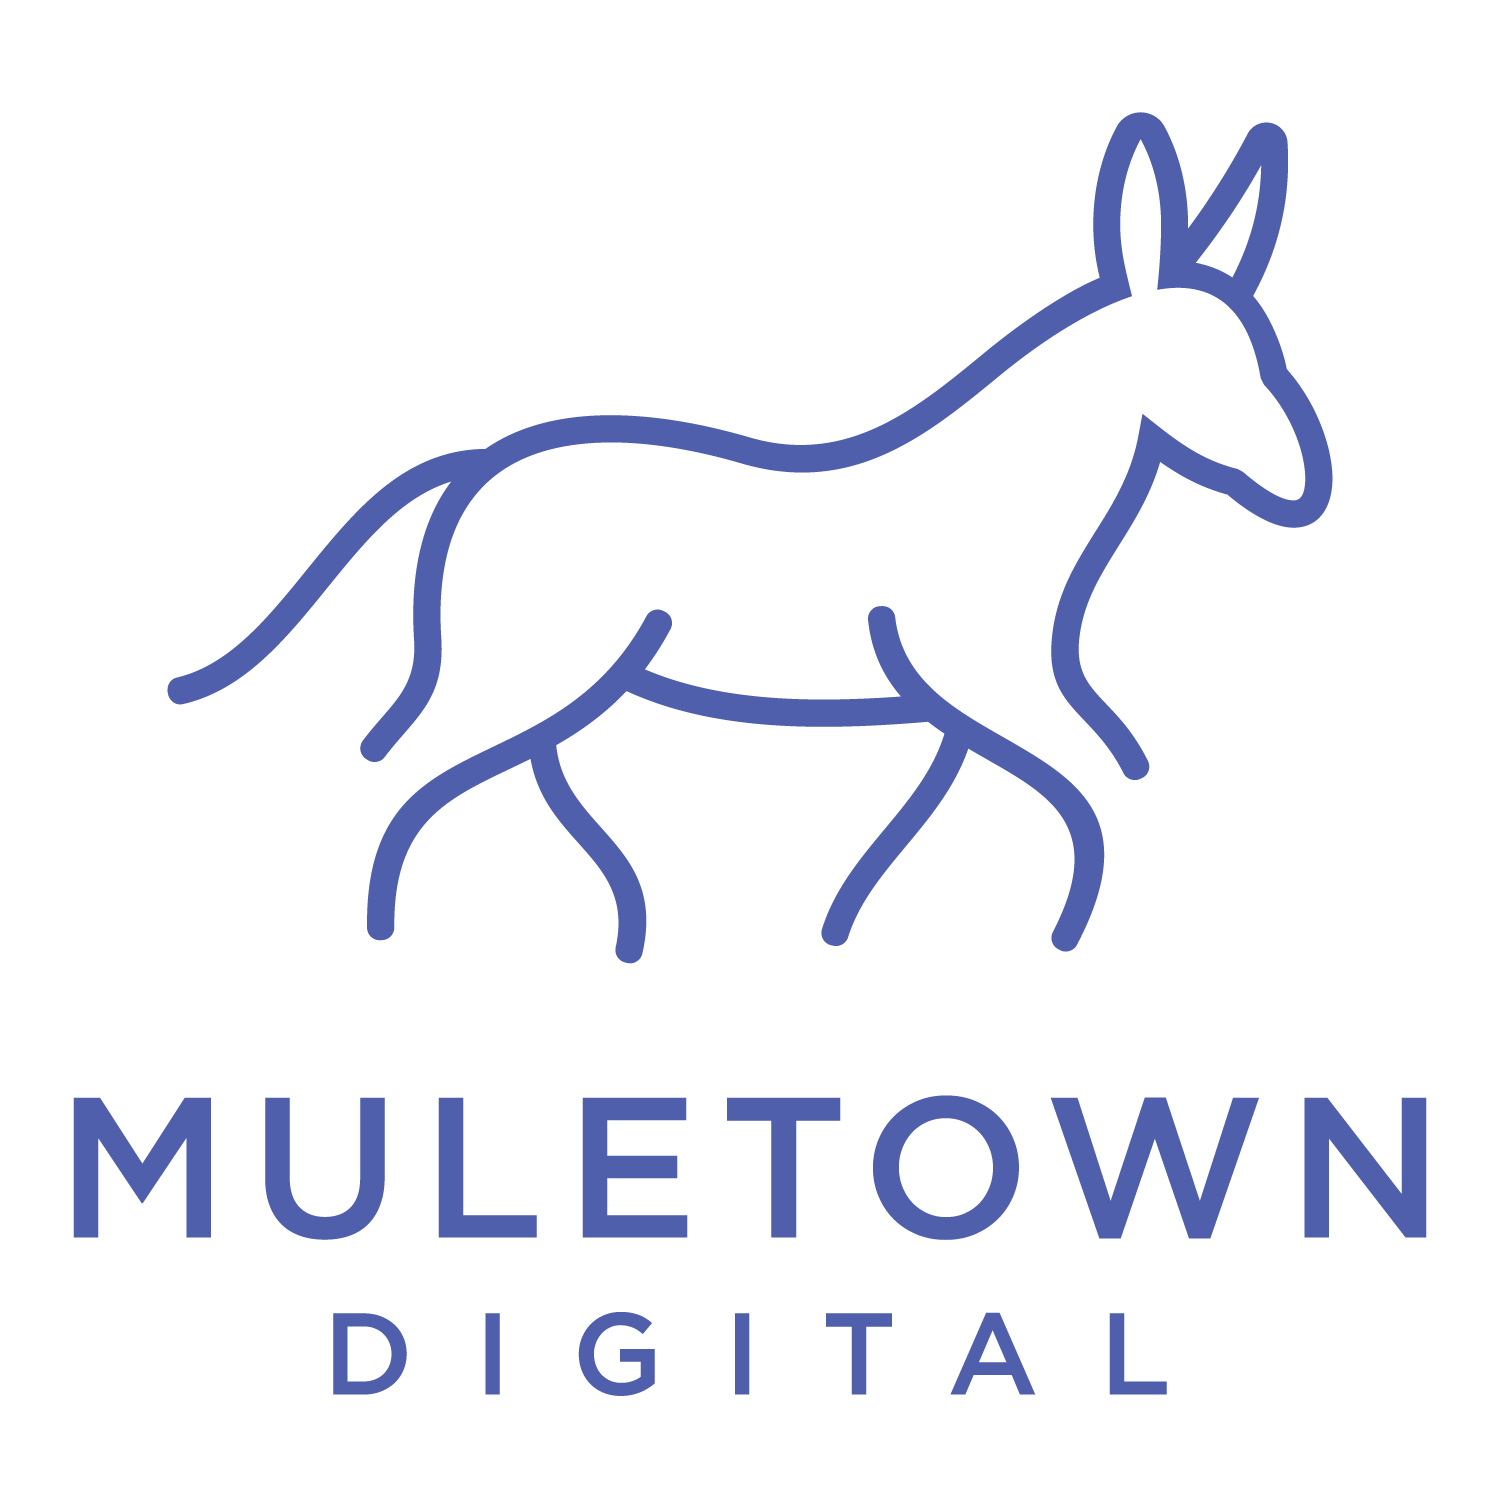 Muletown Digital